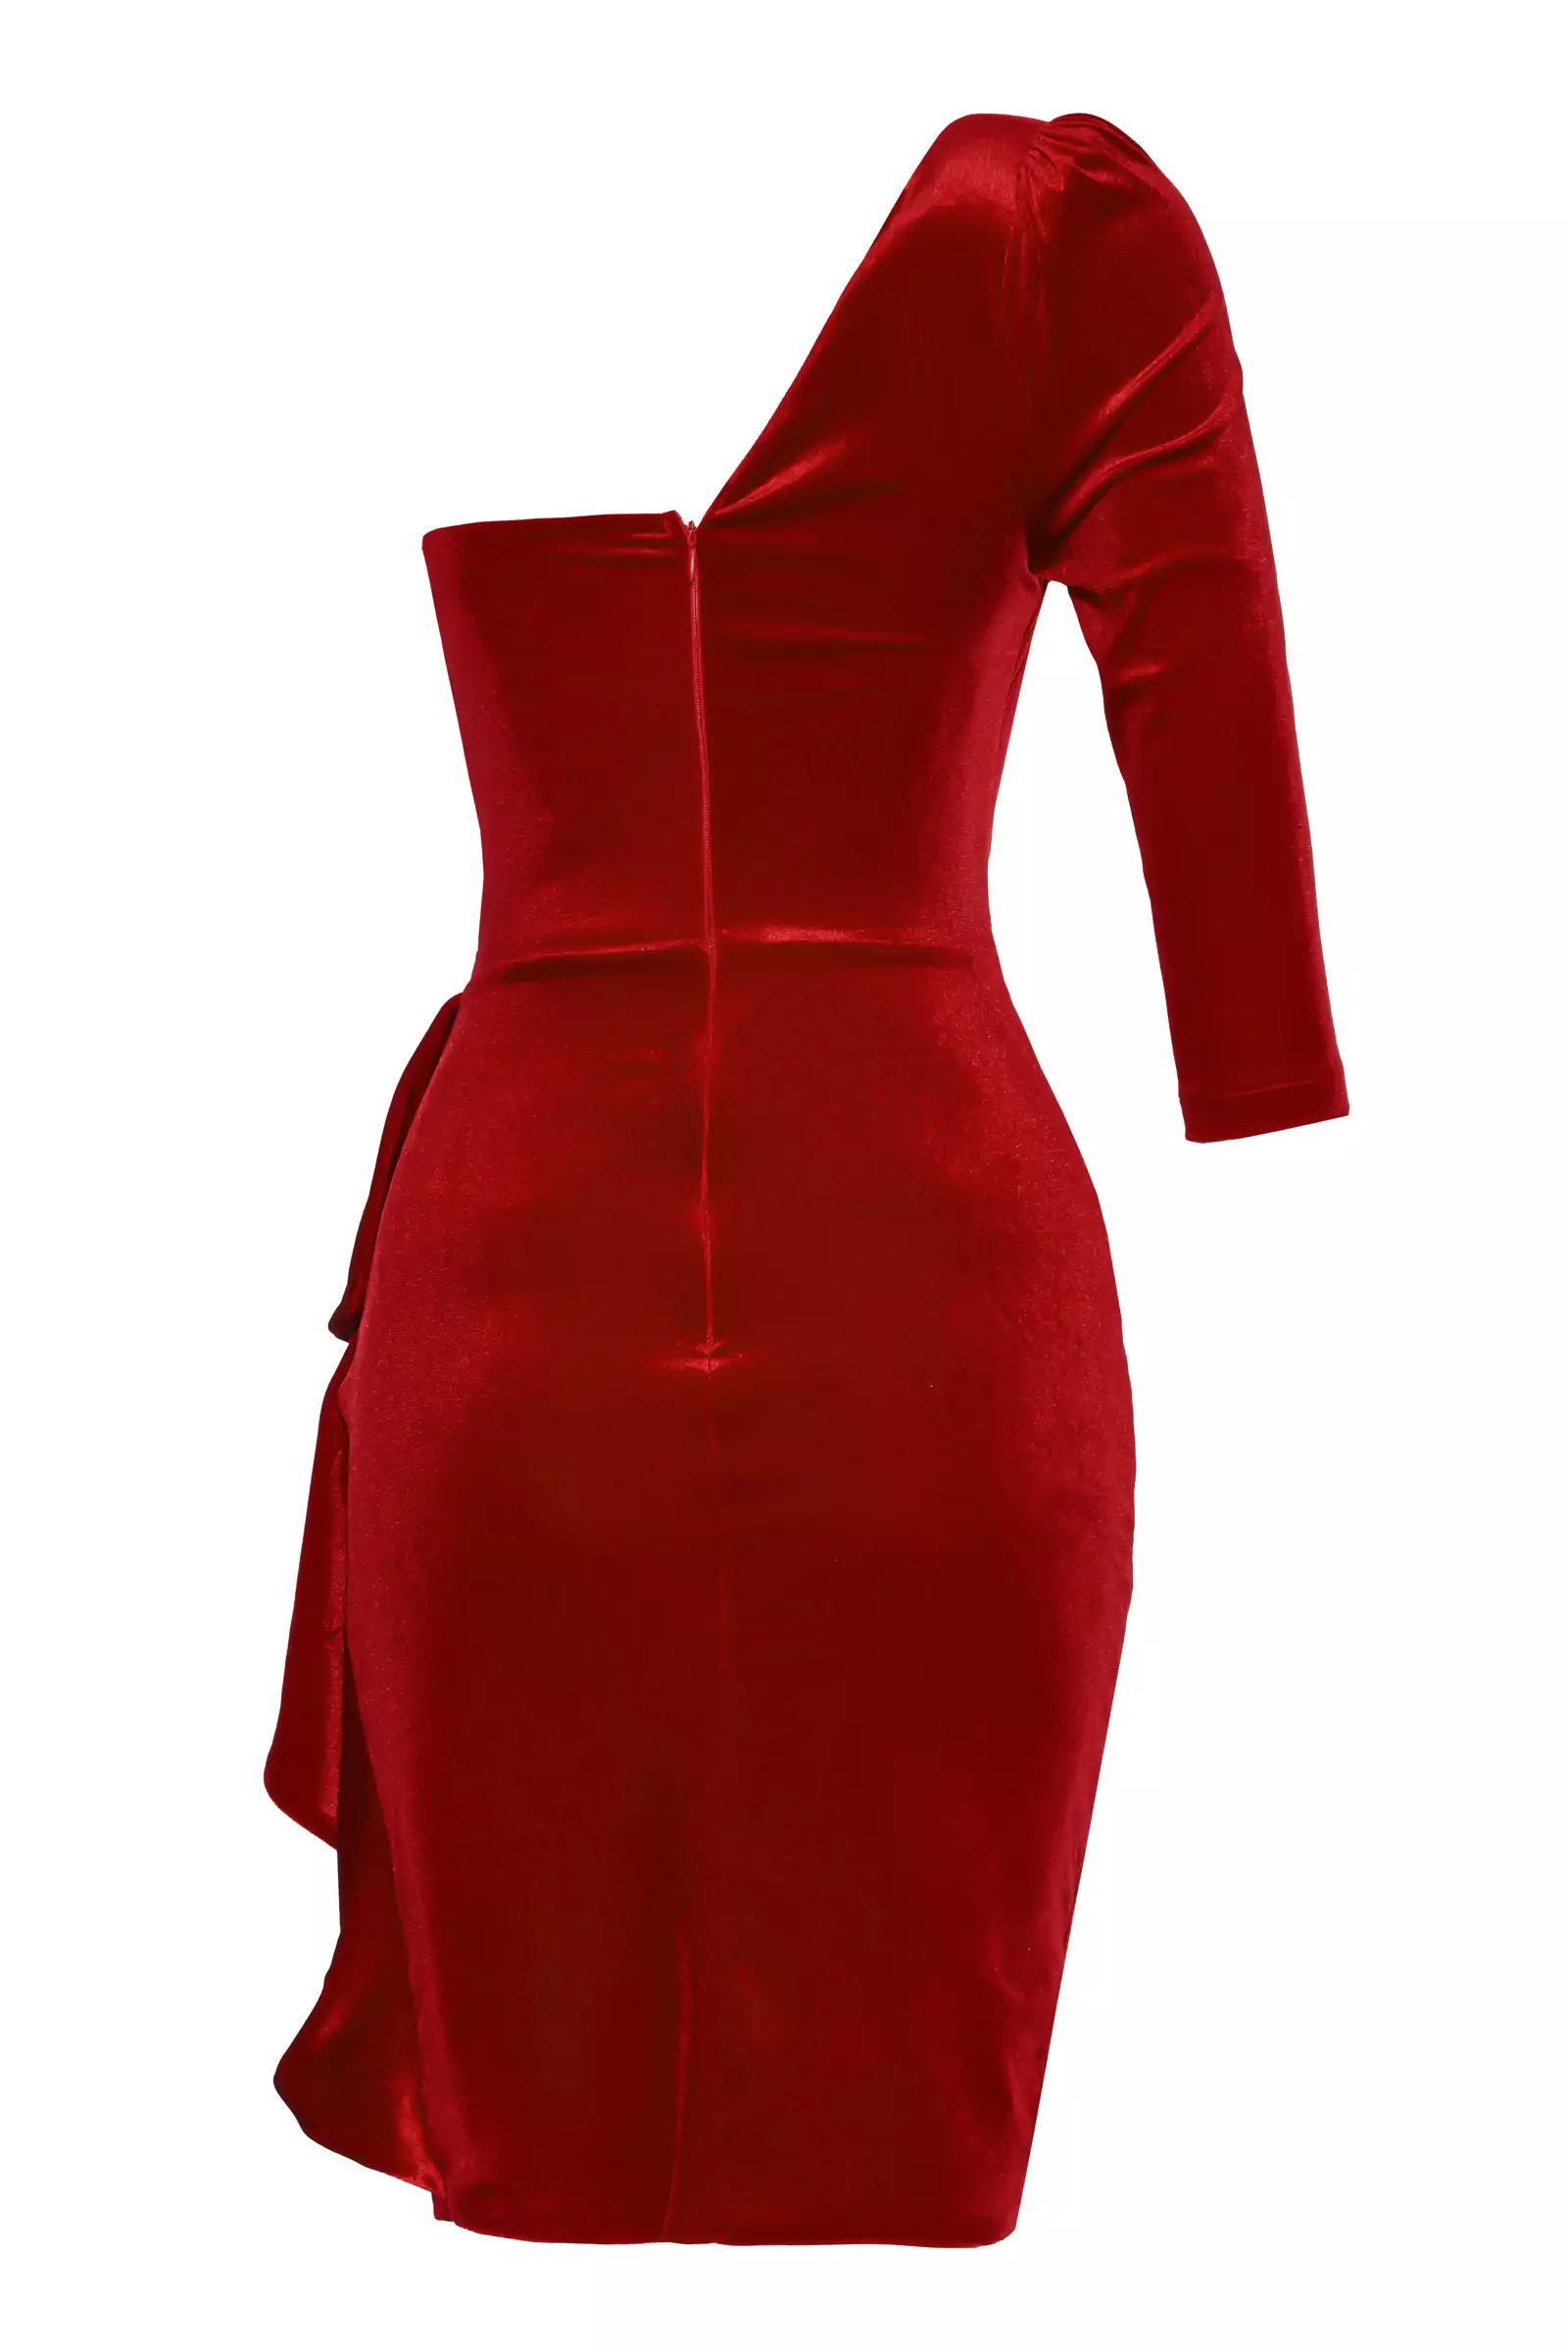 Red velvet one arm mini dress